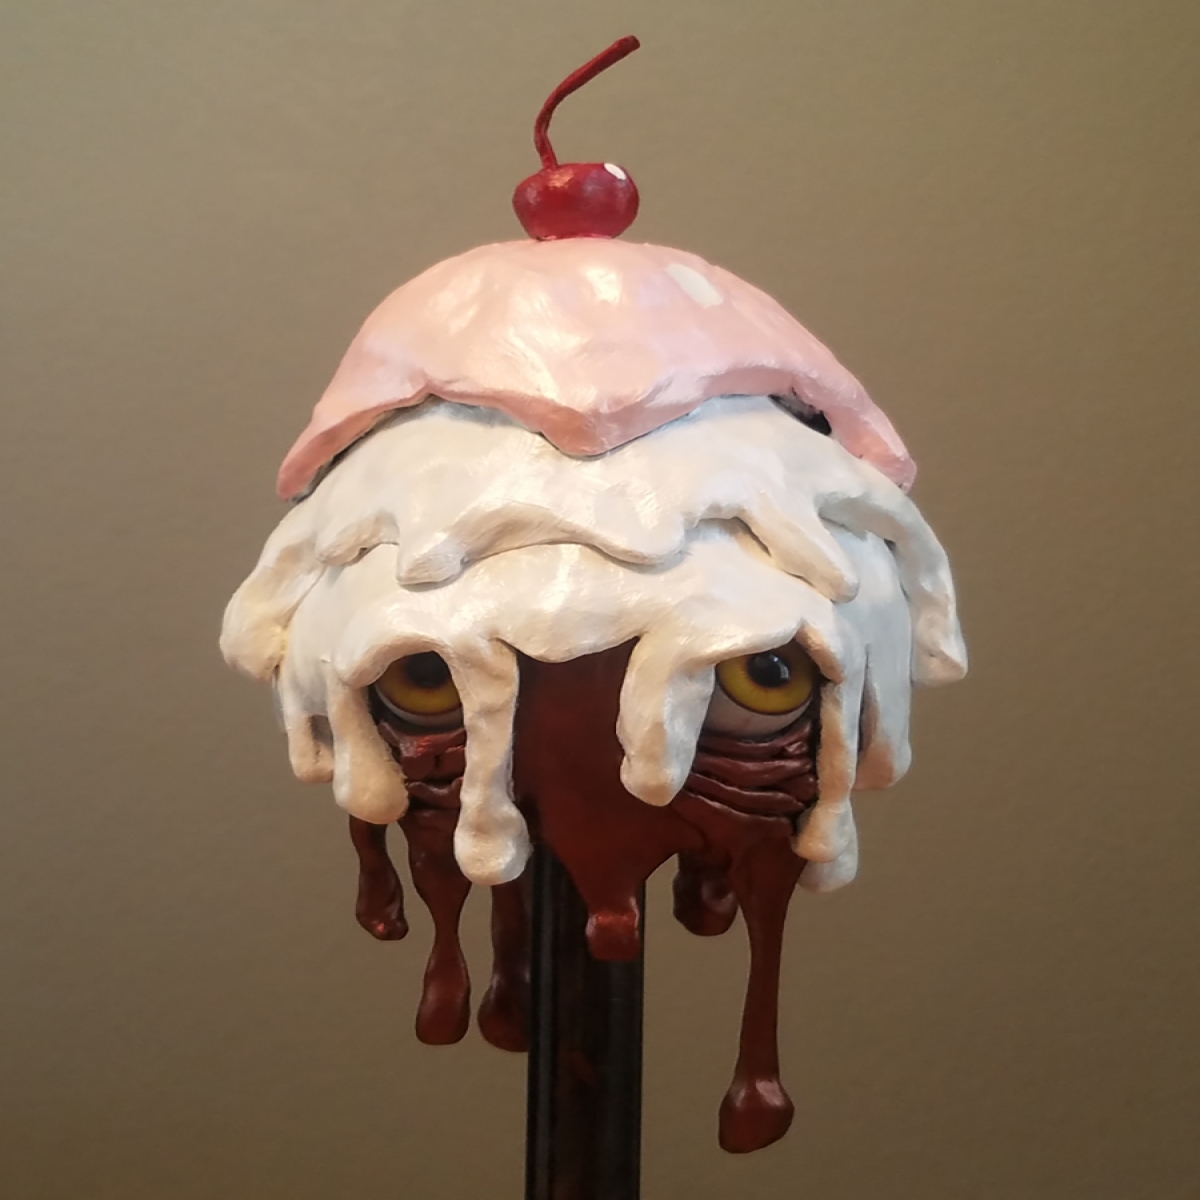 maquette, dripping ice cream cone shape